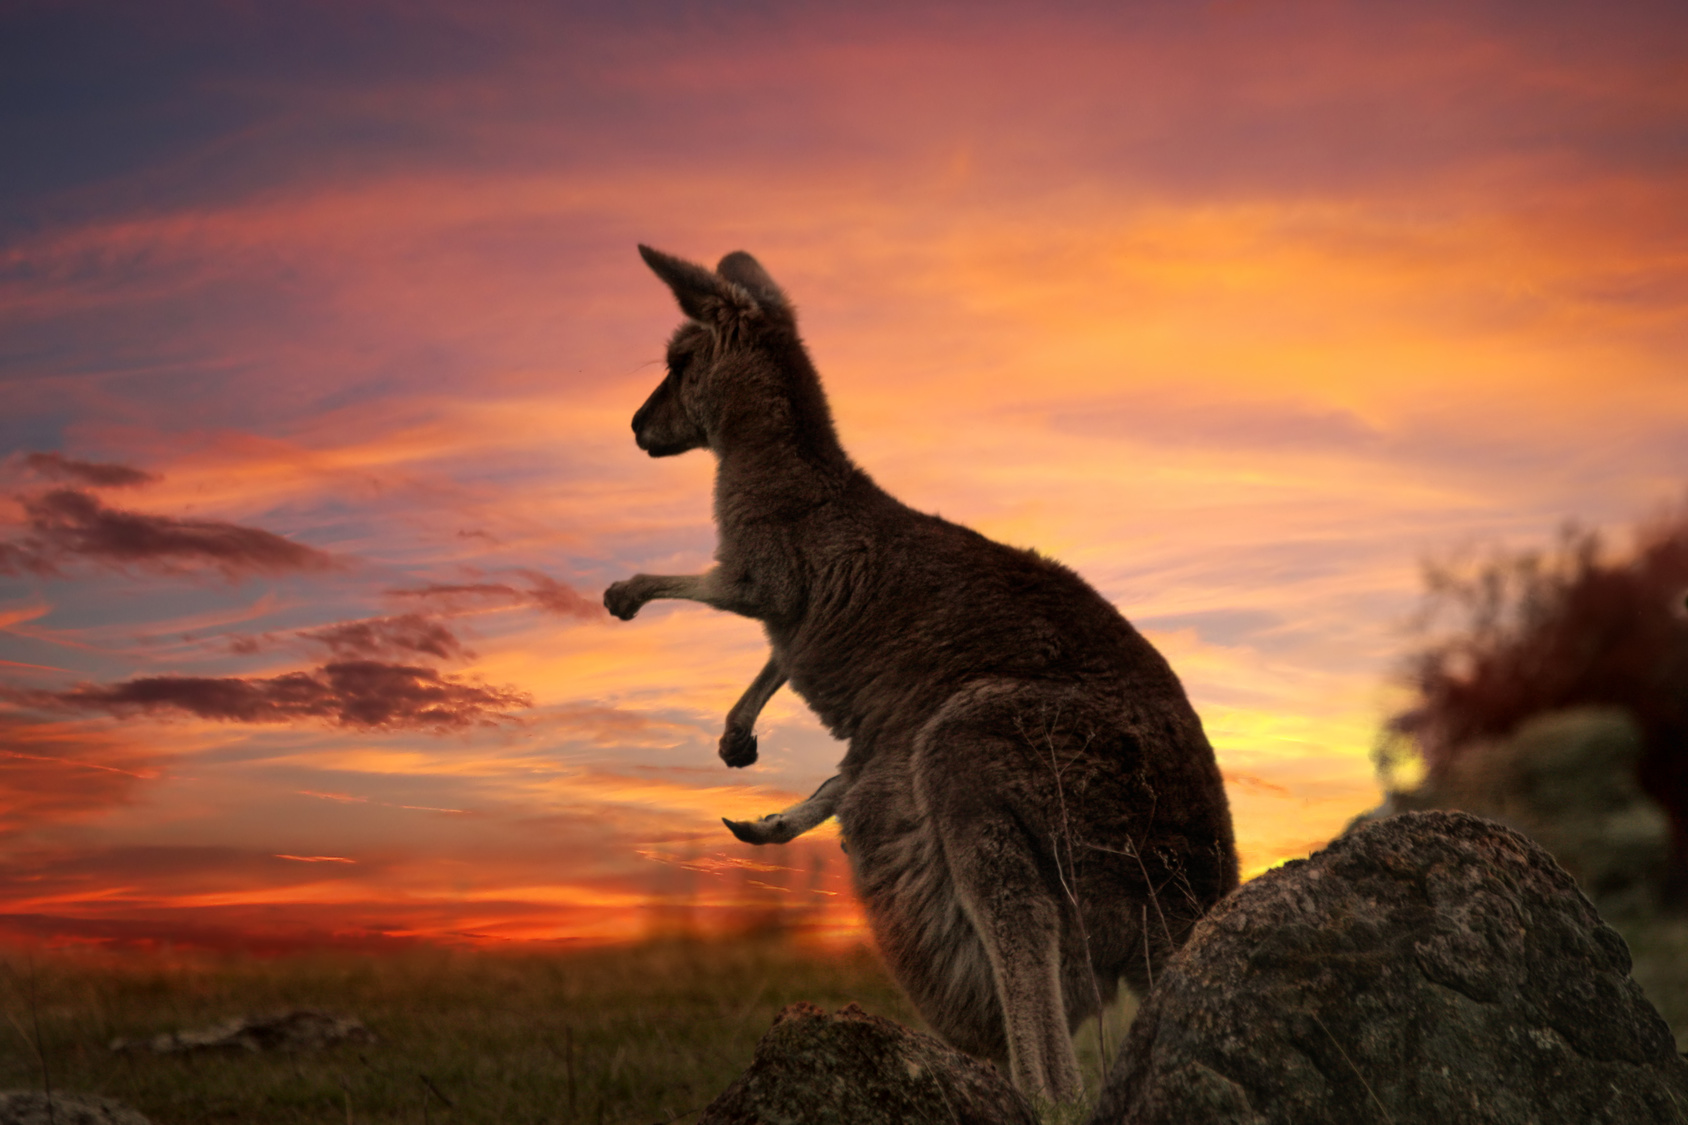 La population de kangourous géants compte plusieurs millions d'individus. © Leah-Anne Thompson, fotolia